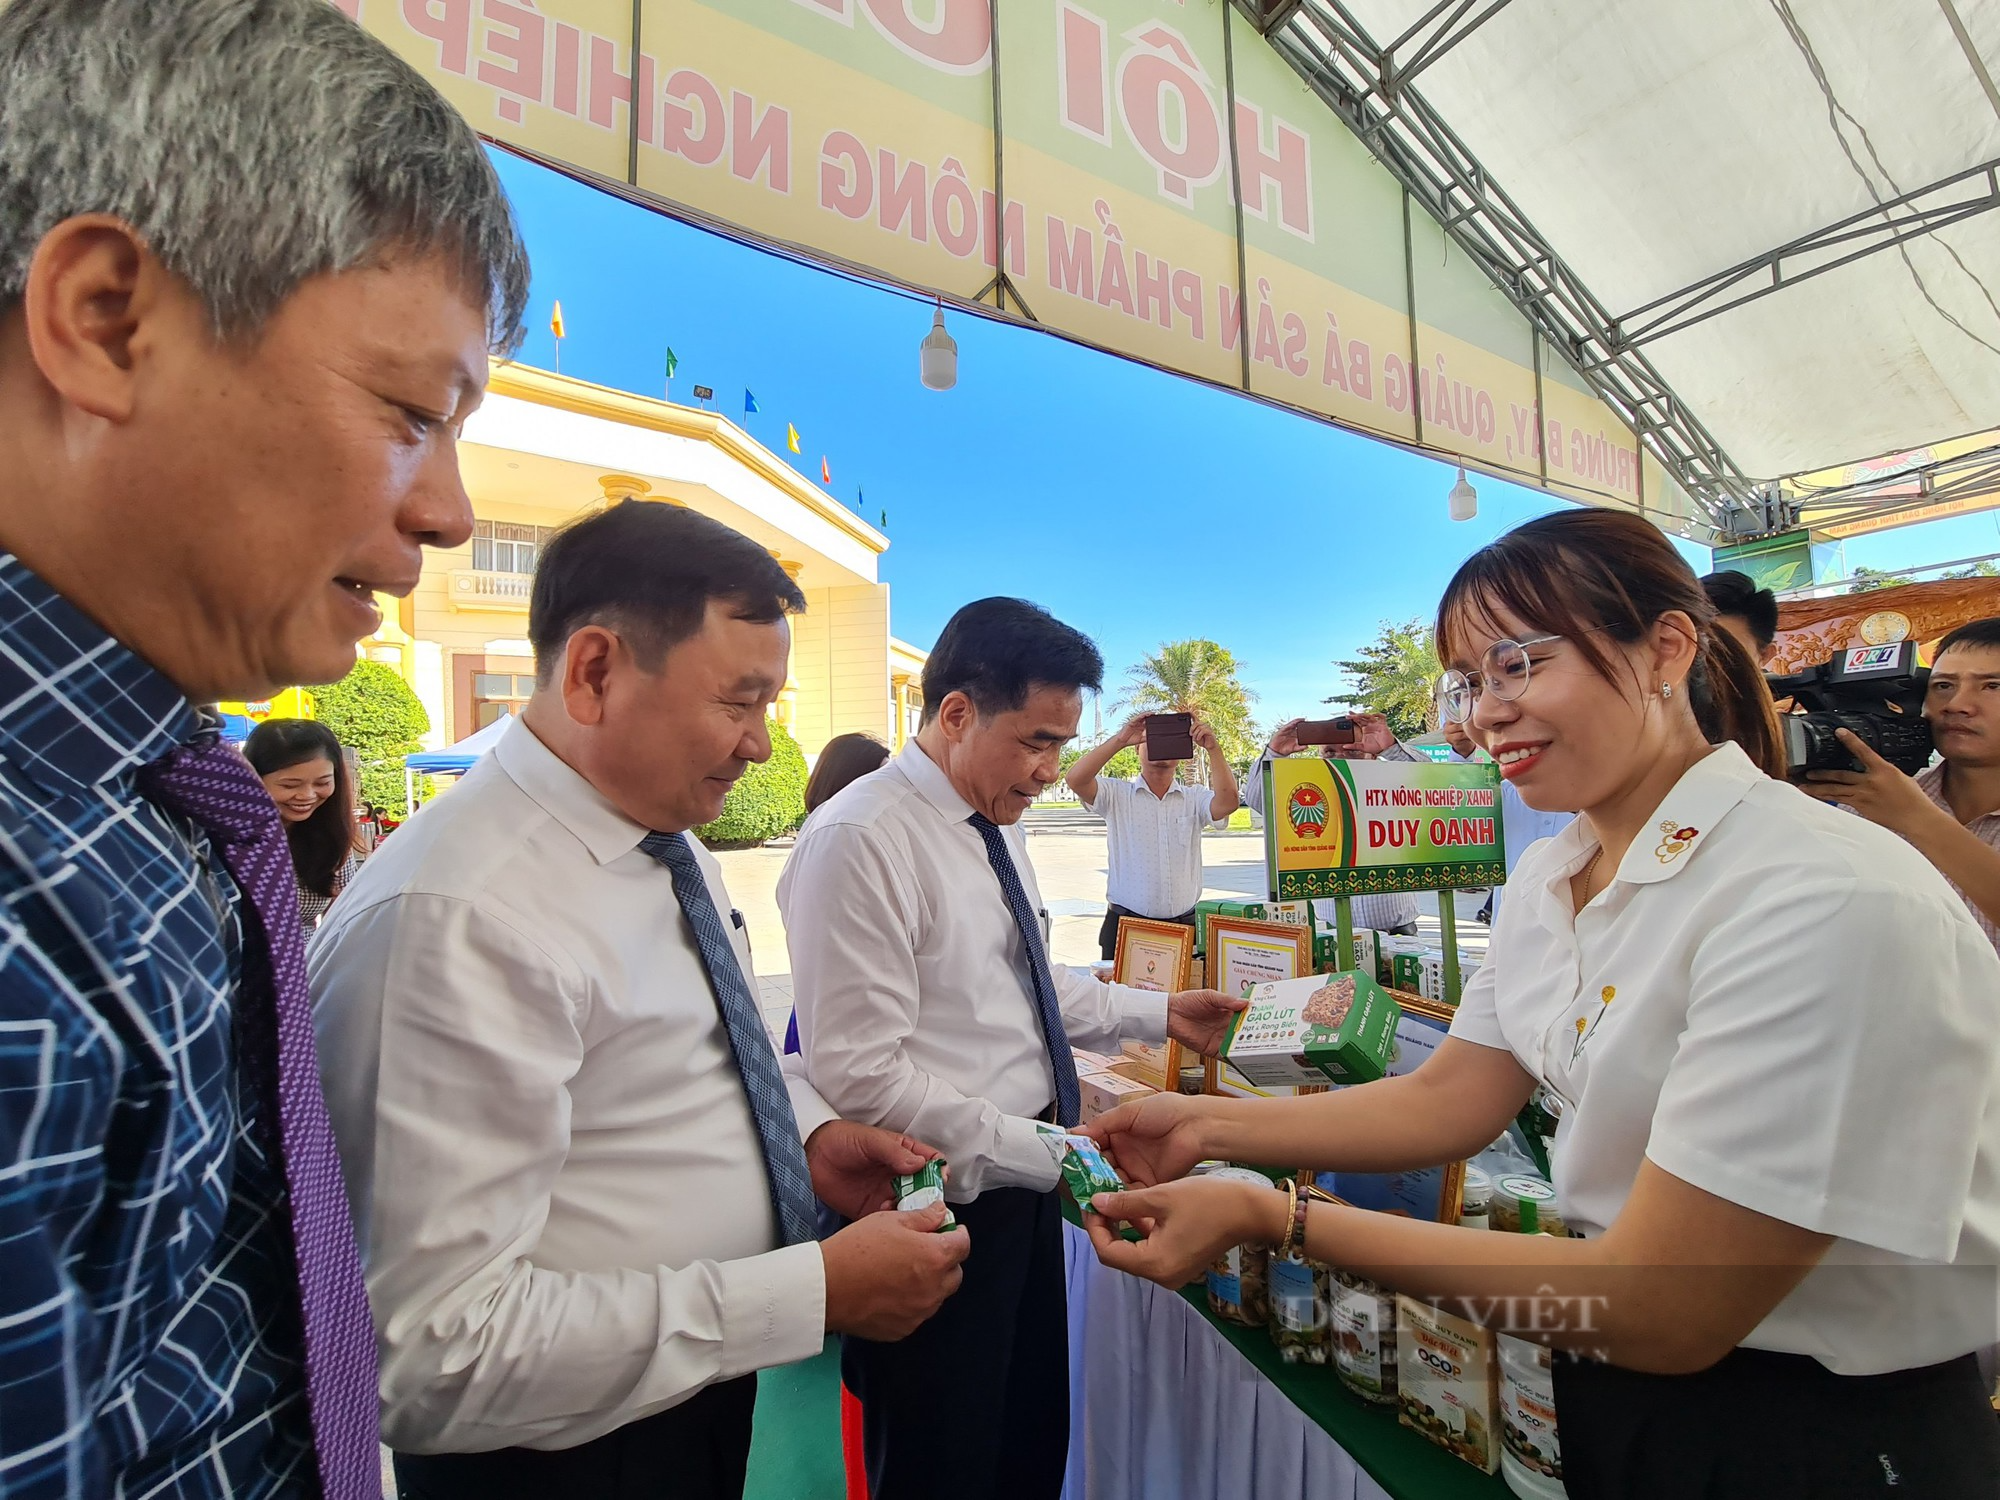 Hội Nông dân Quảng Nam khai mạc hội chợ nông nghiệp với 550 sản phẩm nhà nông các loại - Ảnh 4.